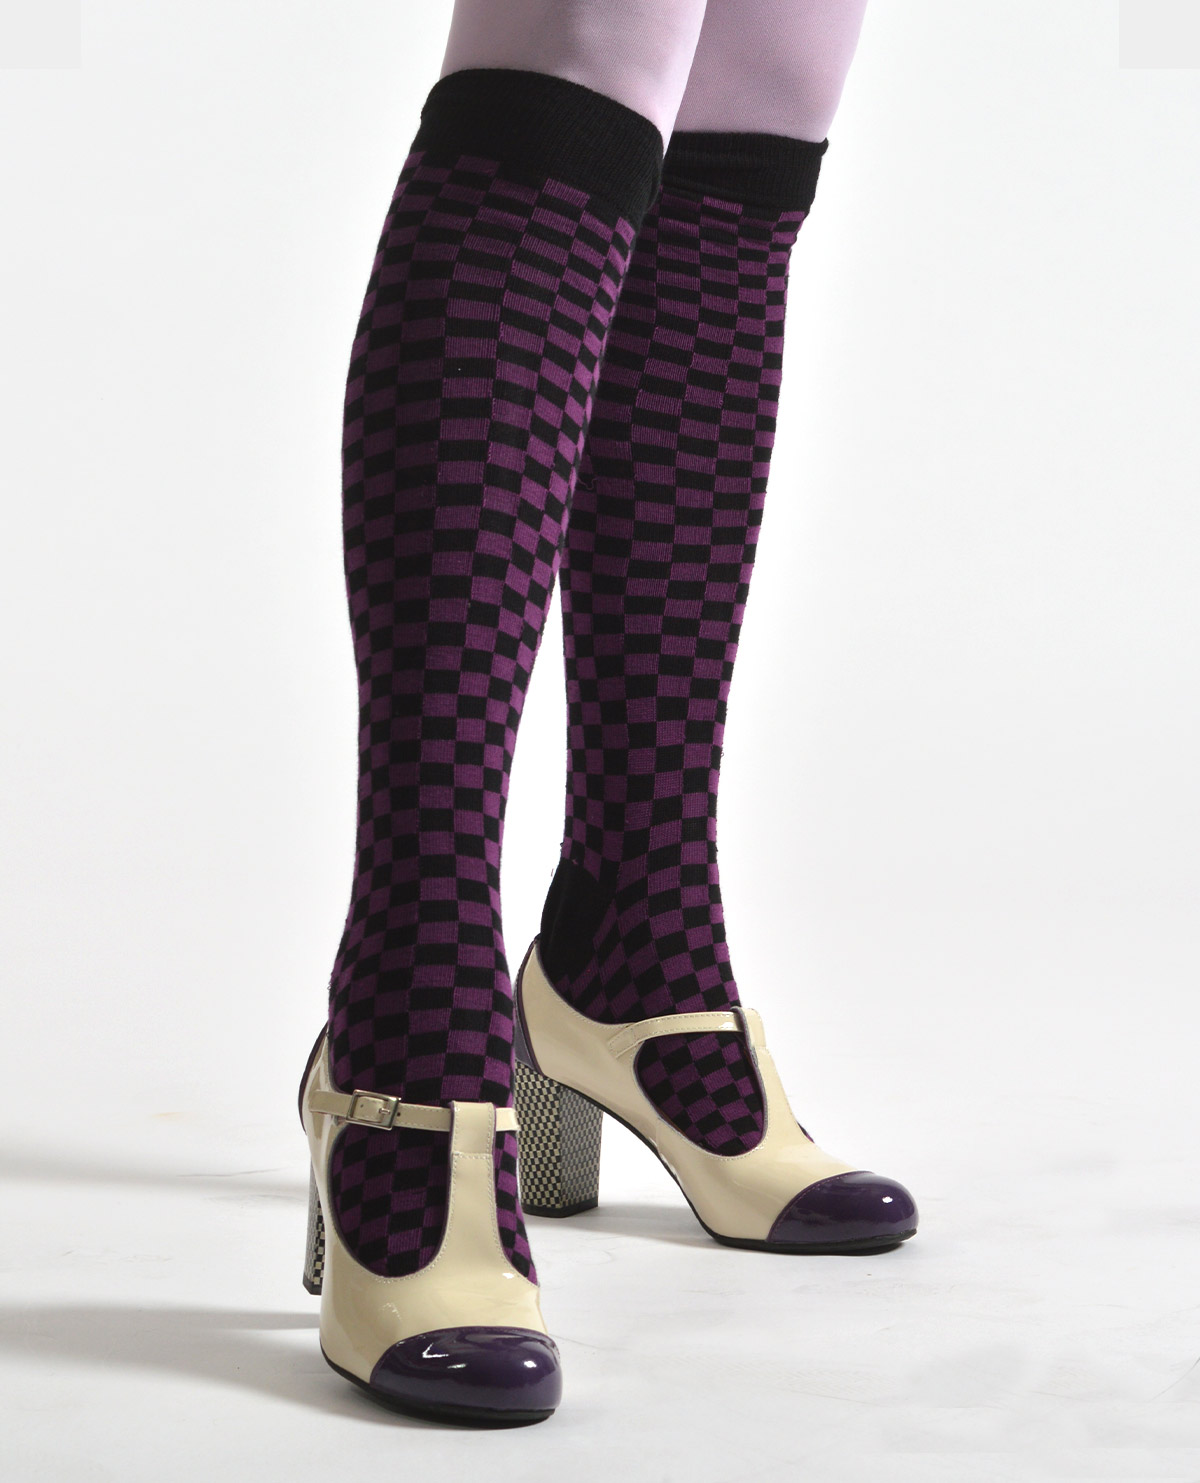 Black Purple Square Knee High Socks- ladies vintage retro 60s